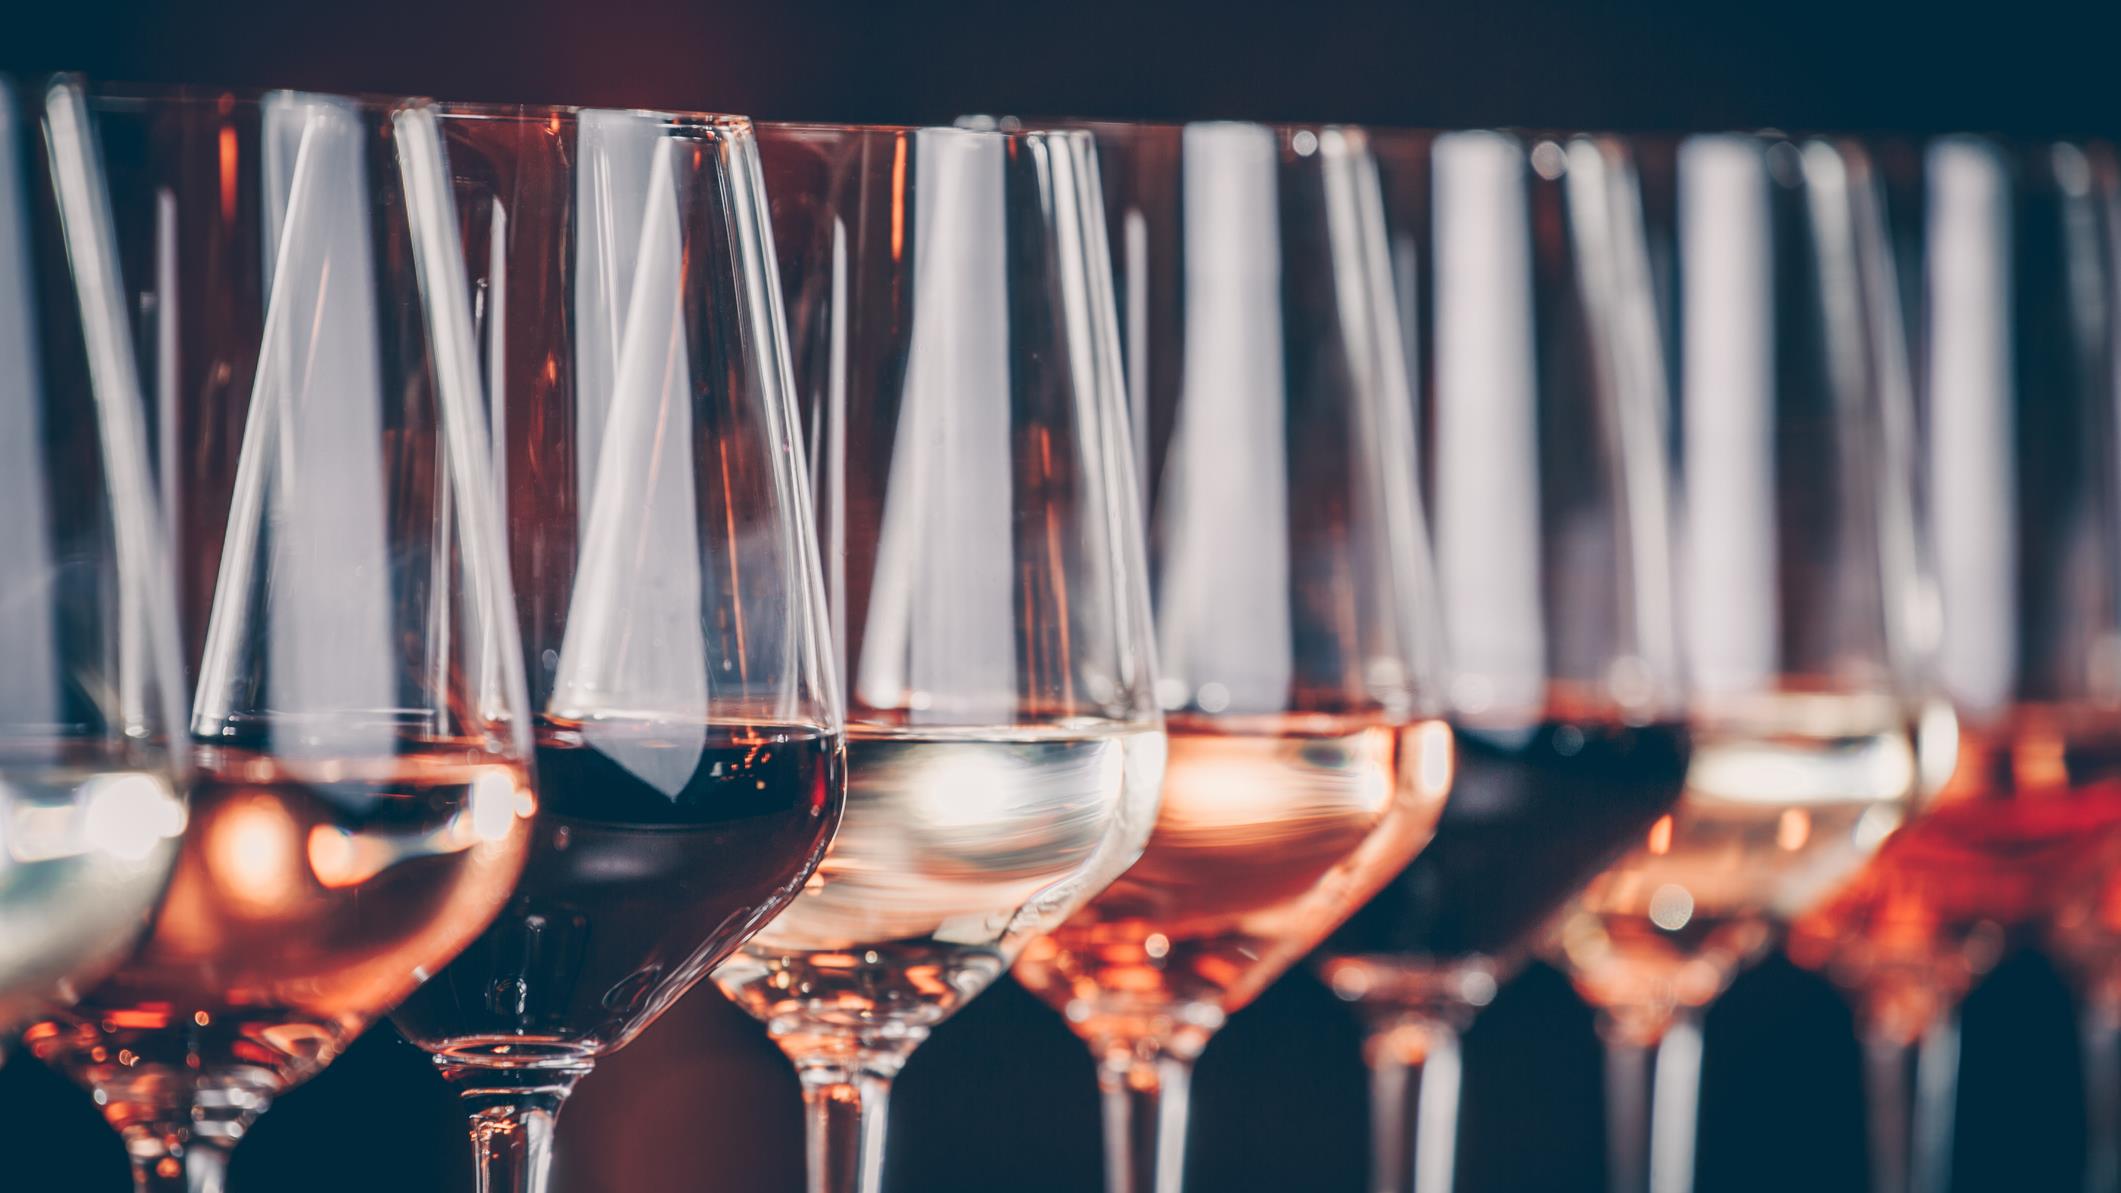 Quel verre choisir pour le vin et l'eau?